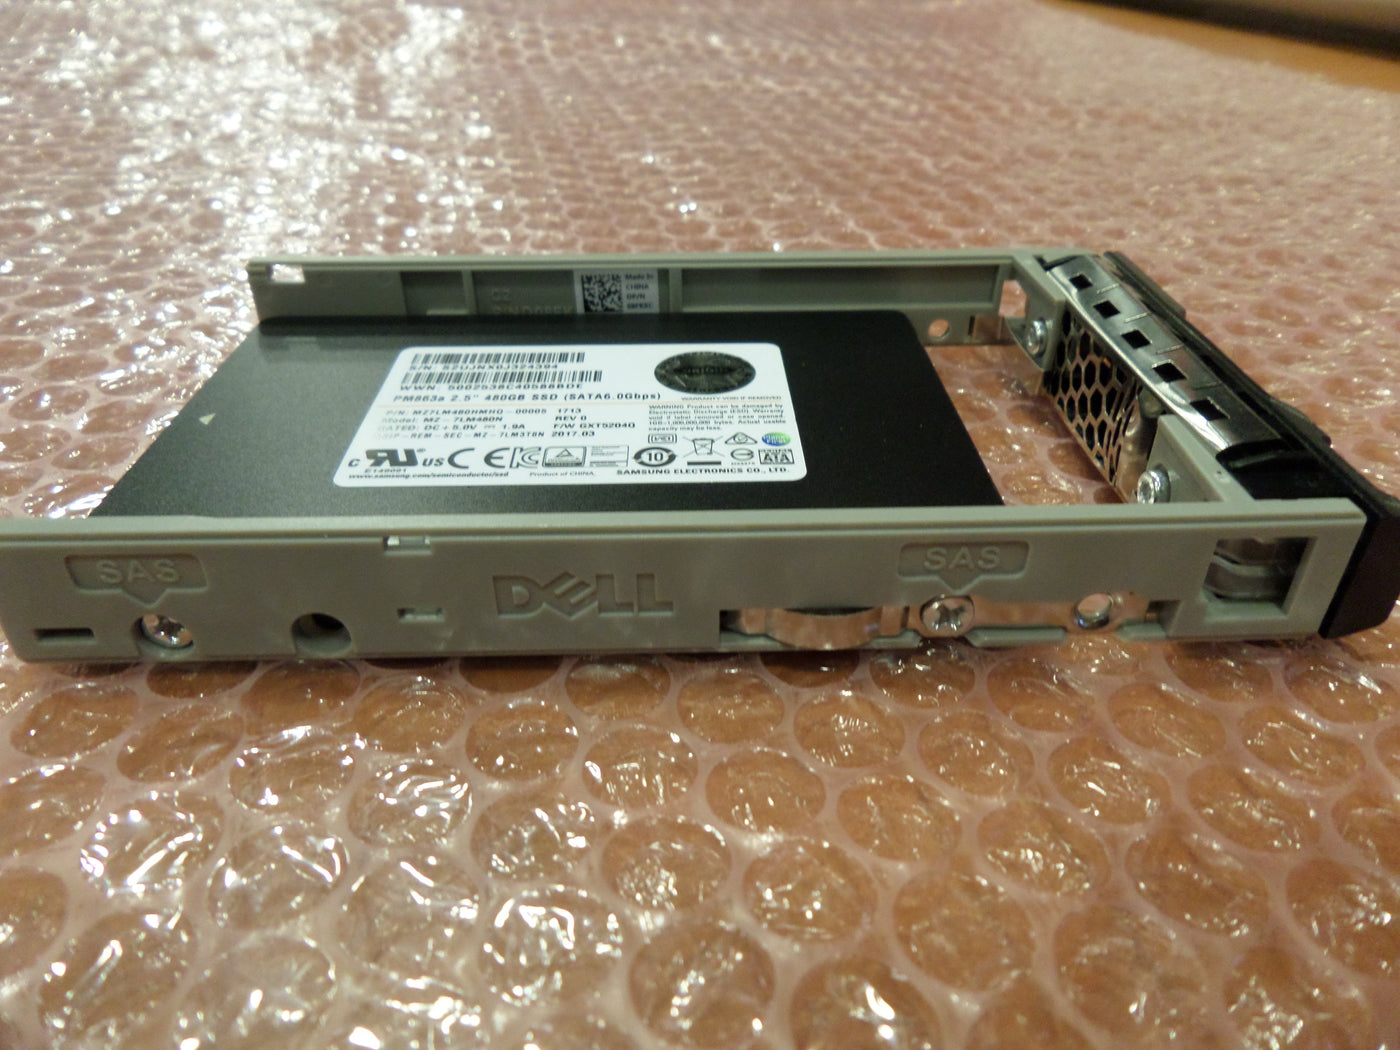 Origin Storage 480GB 2.5" SATA 480GB - solid state drives Serial ATA III, 2.5"( PN DELL480EMLCRI S16 NOB )